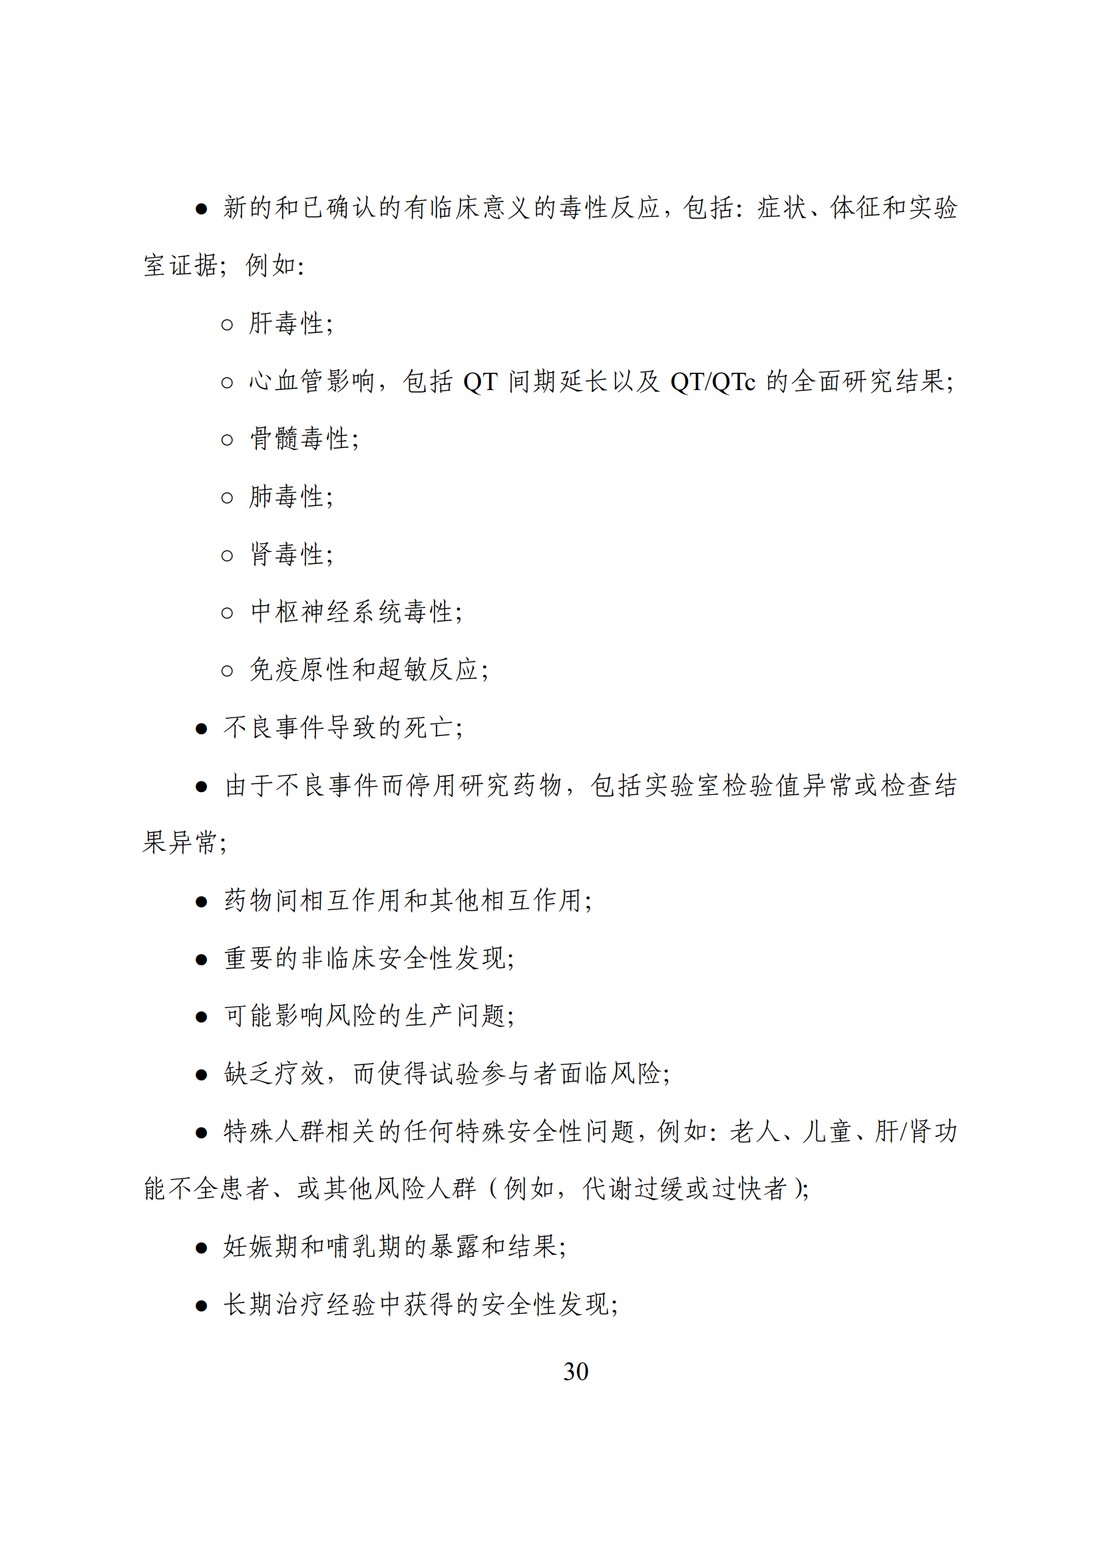 E2F 研发期间安全性更新报告(中文翻译公开征求意见稿)_35.jpg